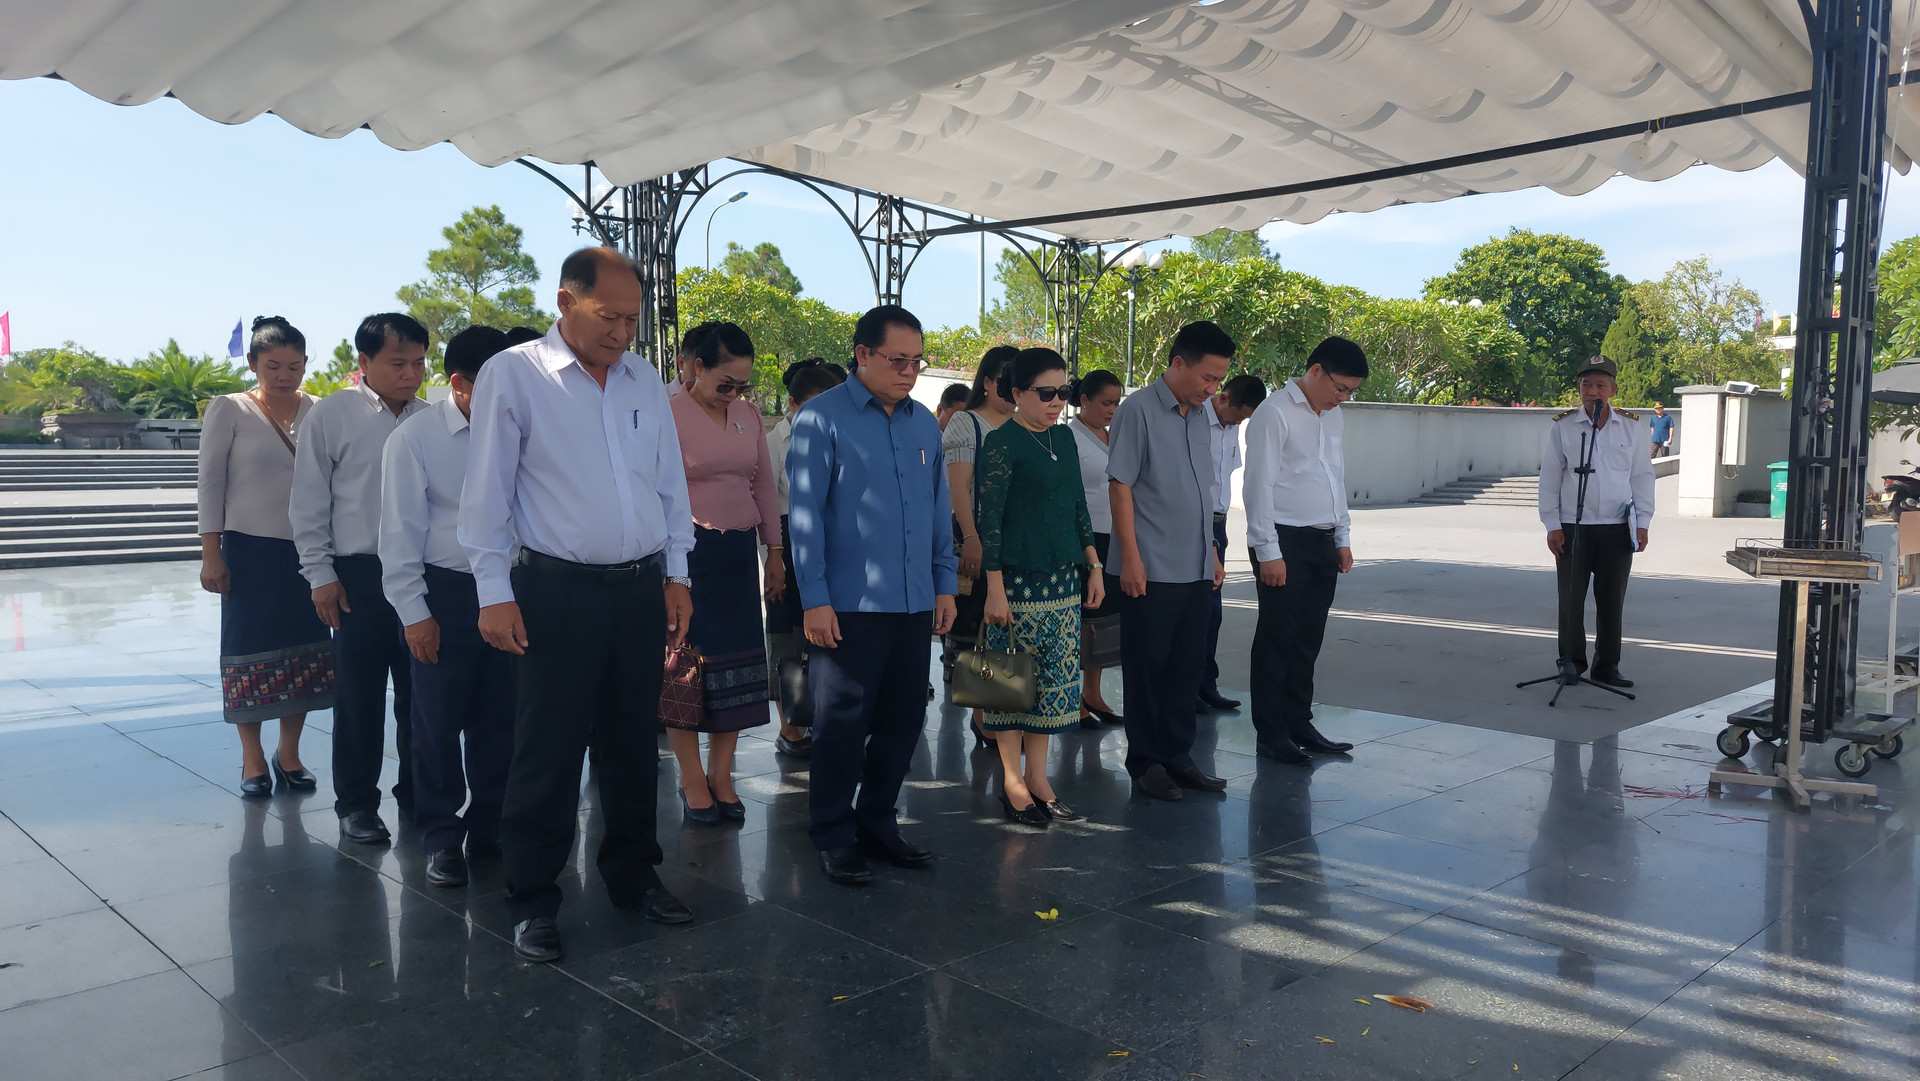 Đoàn đại biểu UBMT Lào xây dựng đất nước tỉnh Savannakhet và đoàn đại biểu Ủy ban MTTQ Việt Nam tỉnh Quảng Trị đã đến dâng hương, dâng hoa viếng các anh hùng liệt sĩ tại Nghĩa trang liệt sĩ Quốc gia Đường 9.